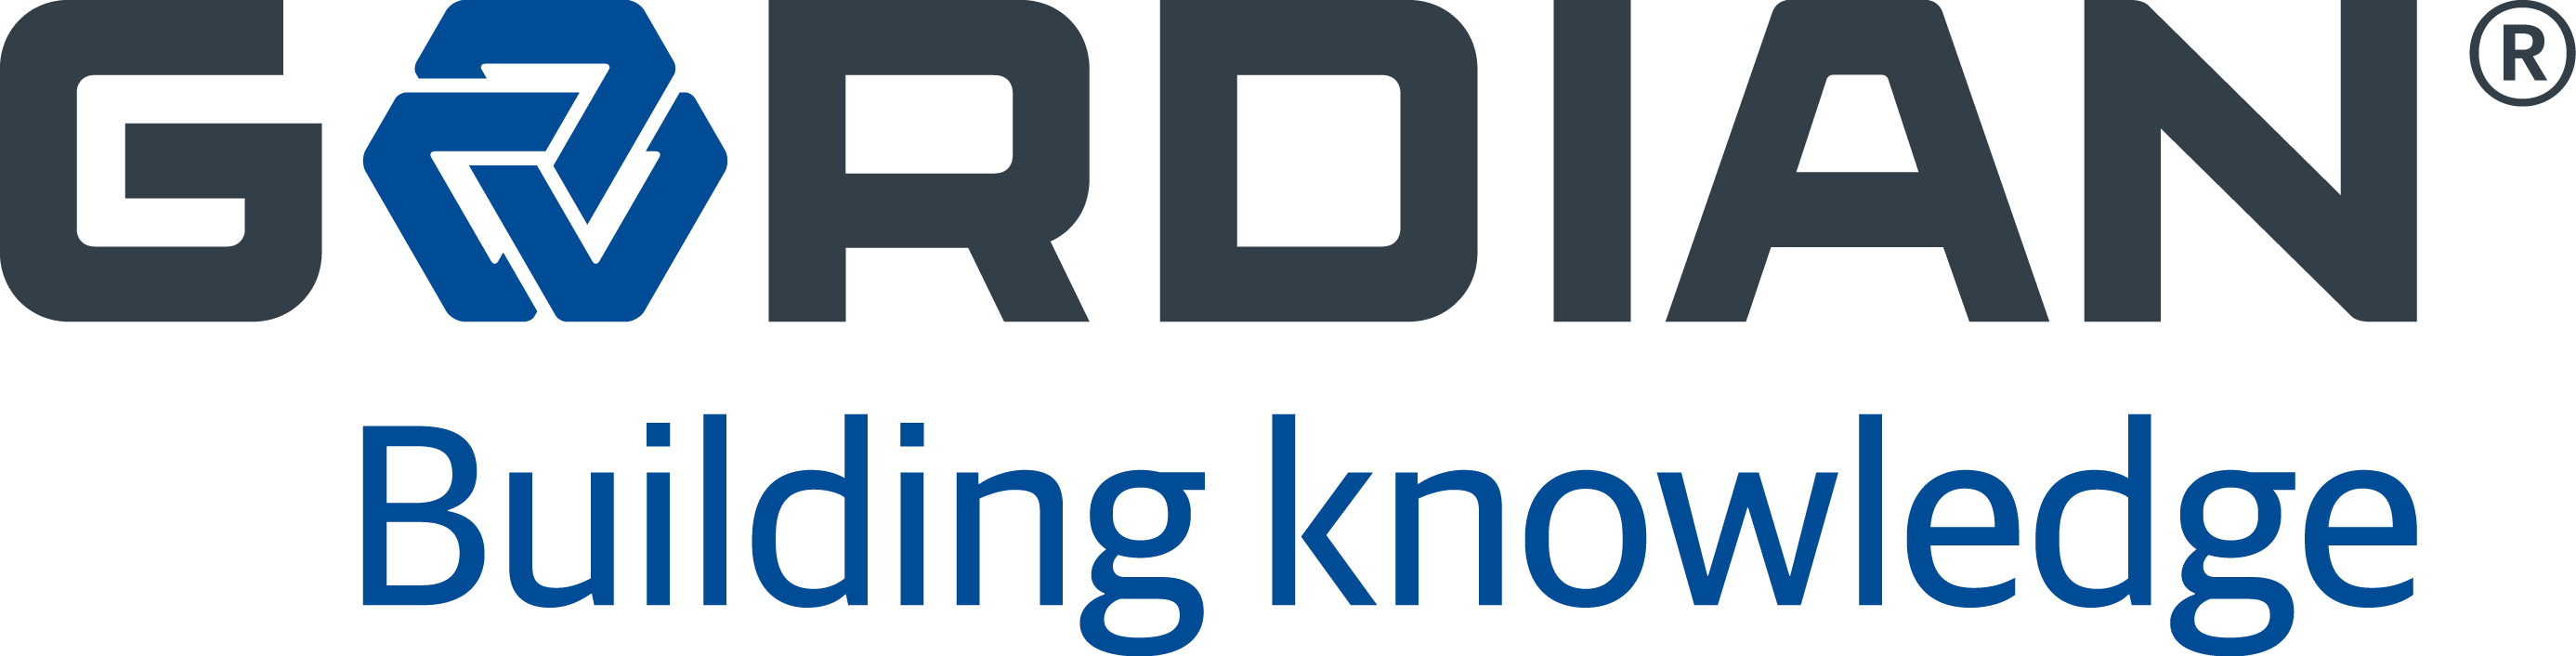 gordian logo.png